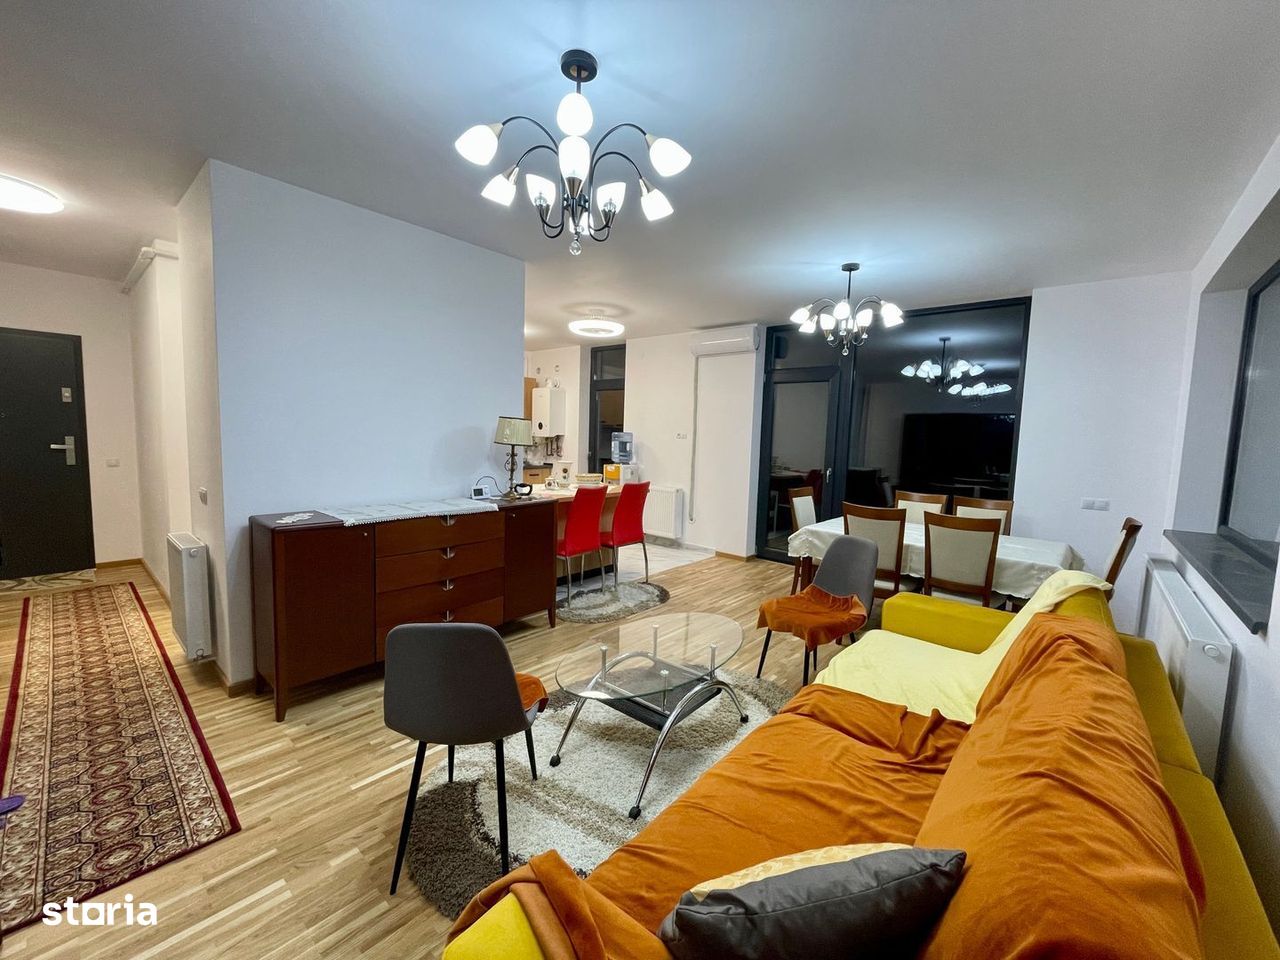 Apartament de vanzare cu 3 camere 87 mp, mobilat utilat Selimbar